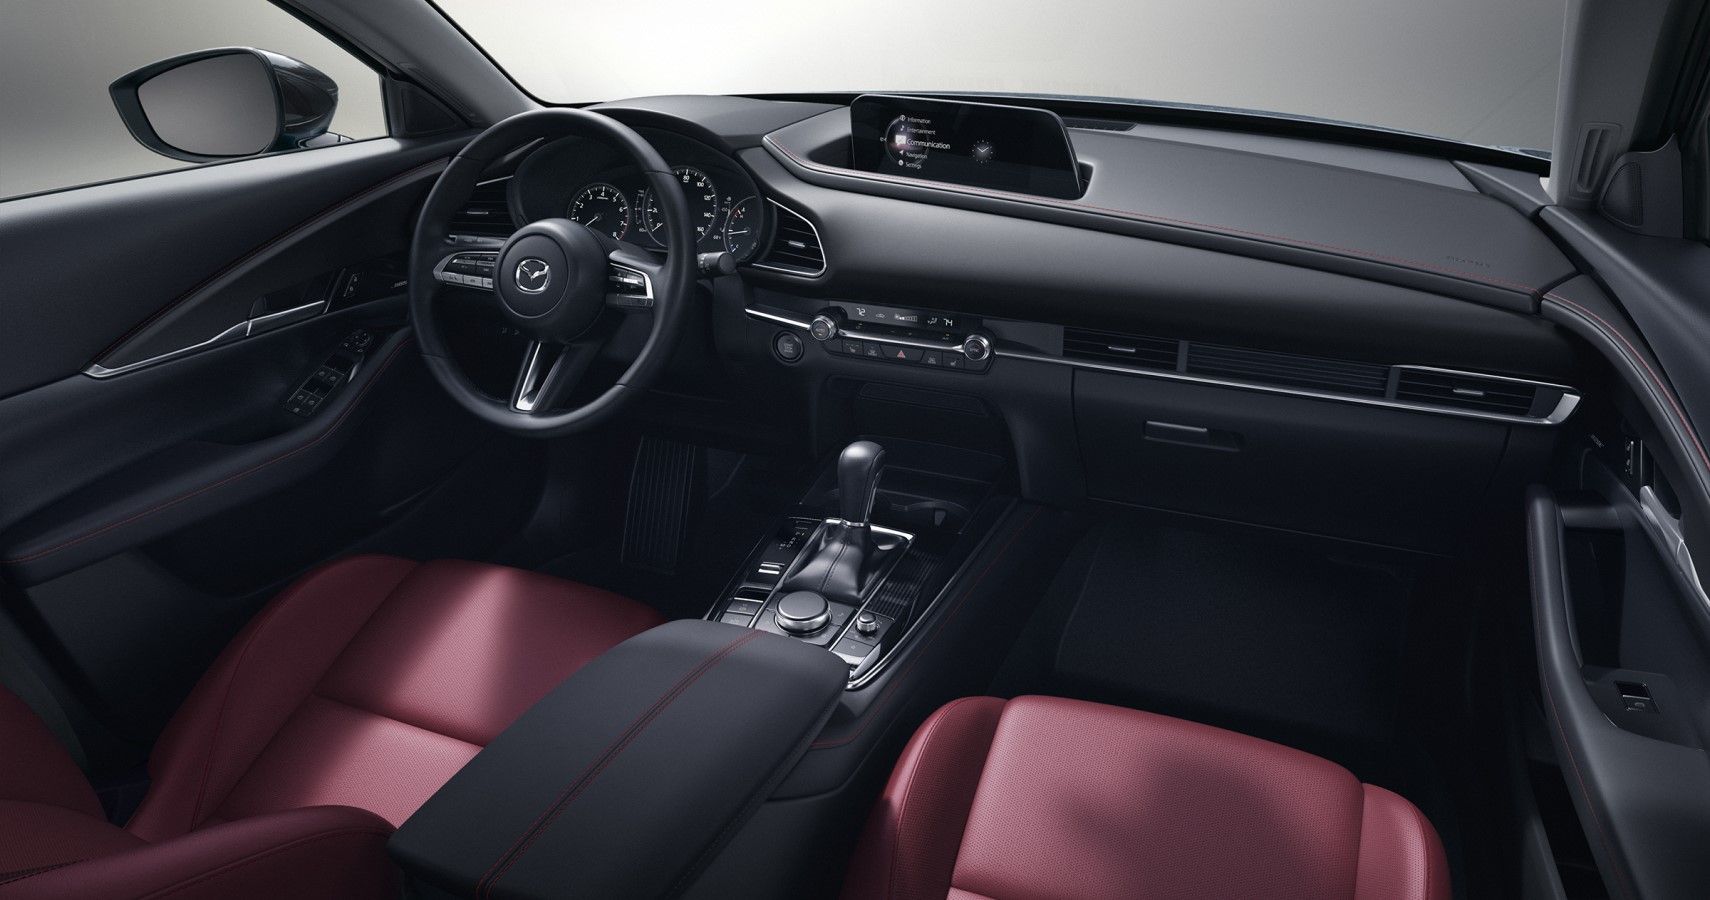 2022 Mazda CX-30 interior view